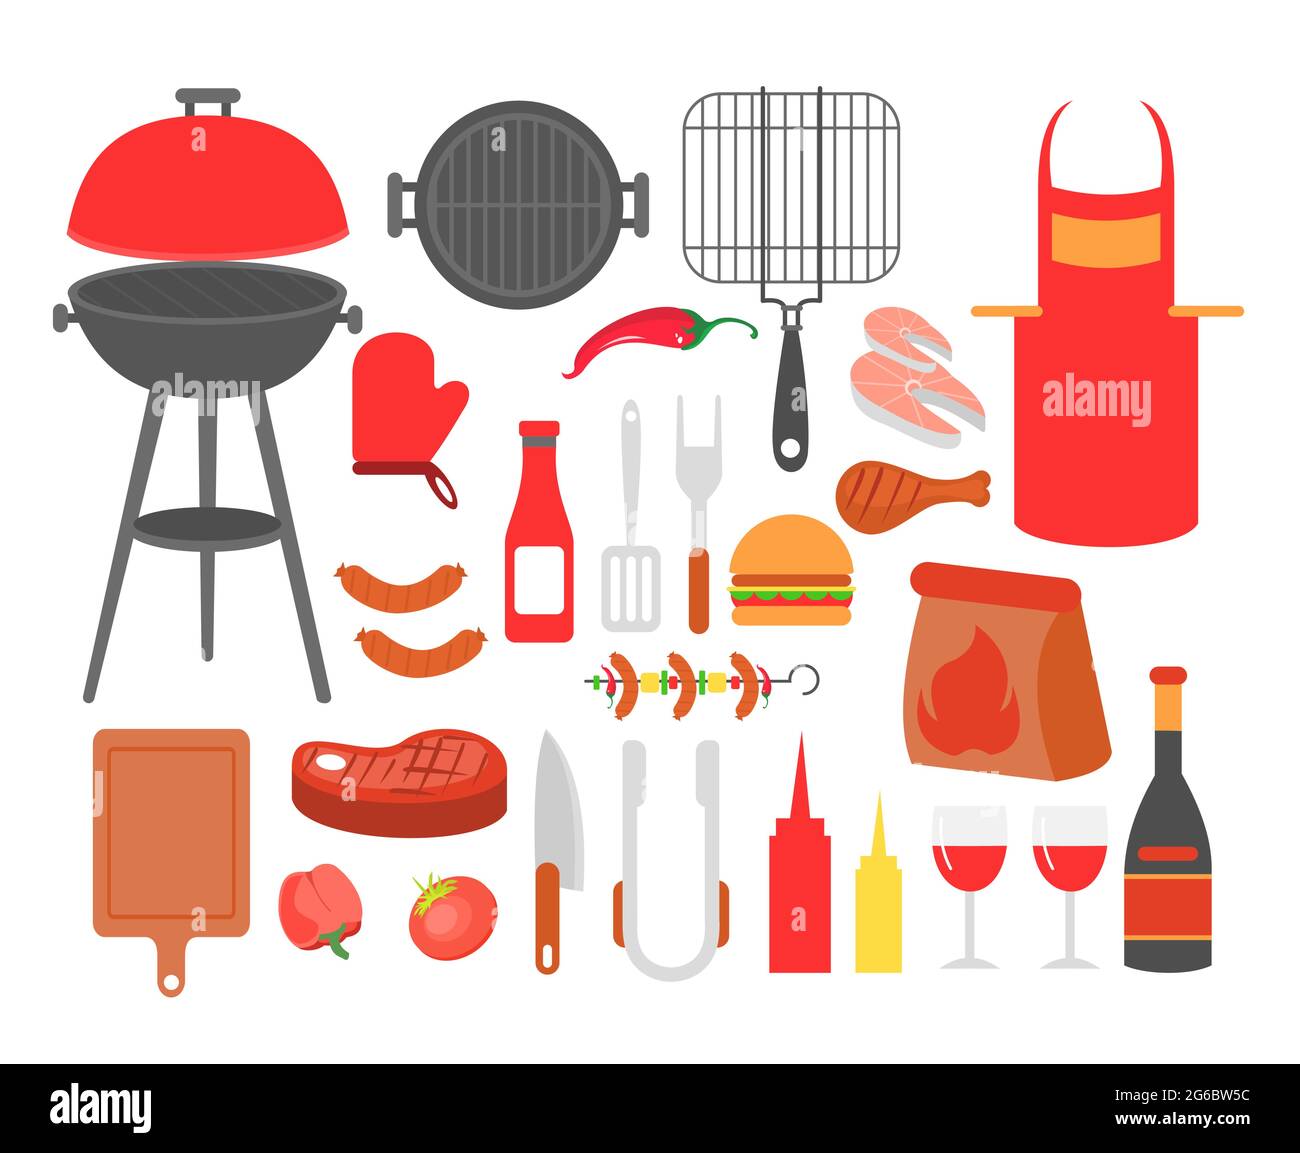 Vektor-Illustration Set von Grill, gegrilltes Essen Steak, Wurst, Huhn, Meeresfrüchte und Gemüse, Alle Werkzeuge für BBQ Party, Kochen Essen draußen. Stock Vektor